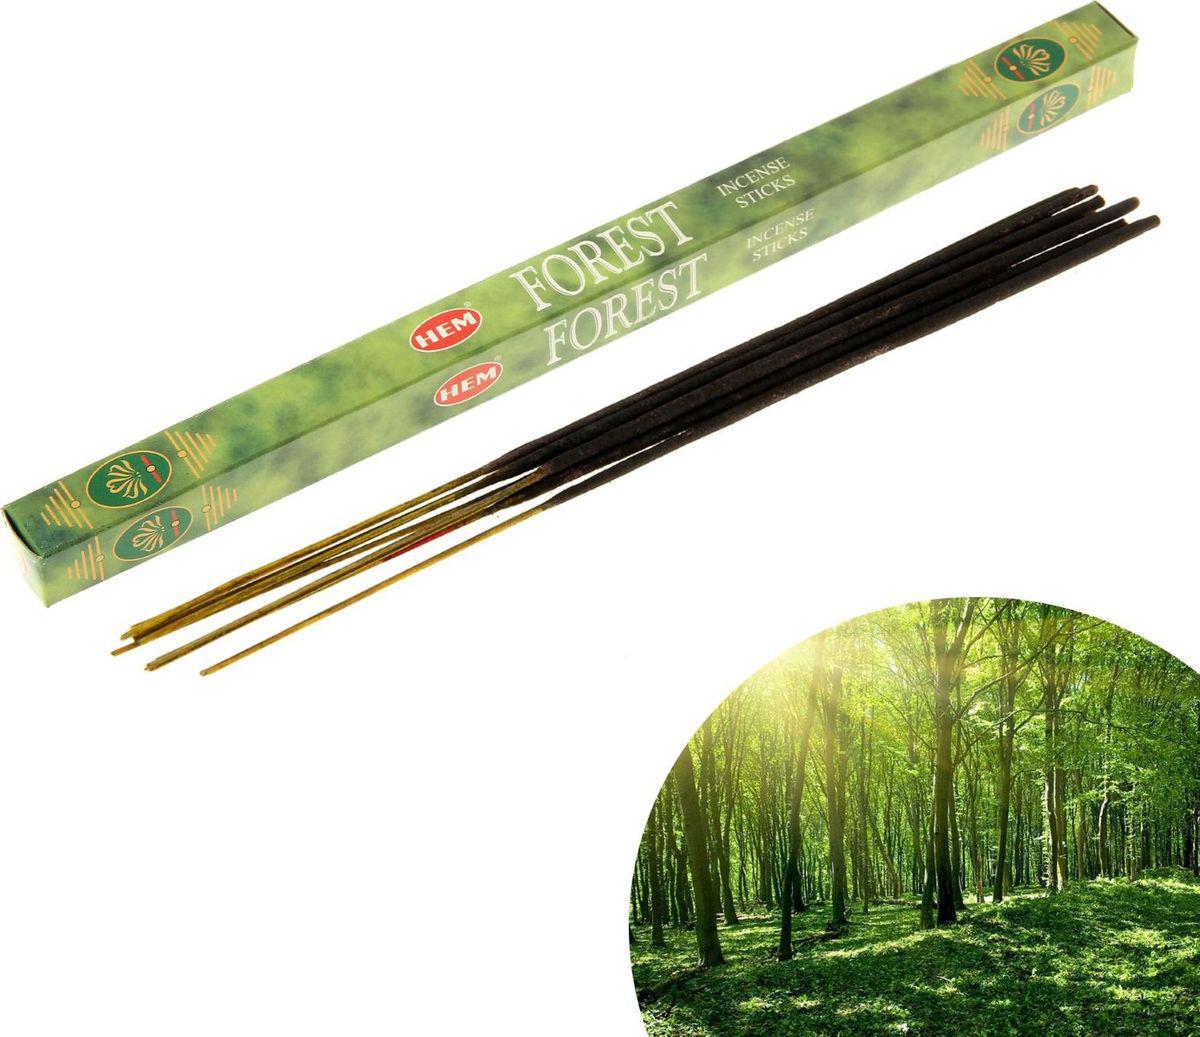 Hem Incense Sticks FOREST (Благовония ЛЕС, Хем), уп. 8 палочек.